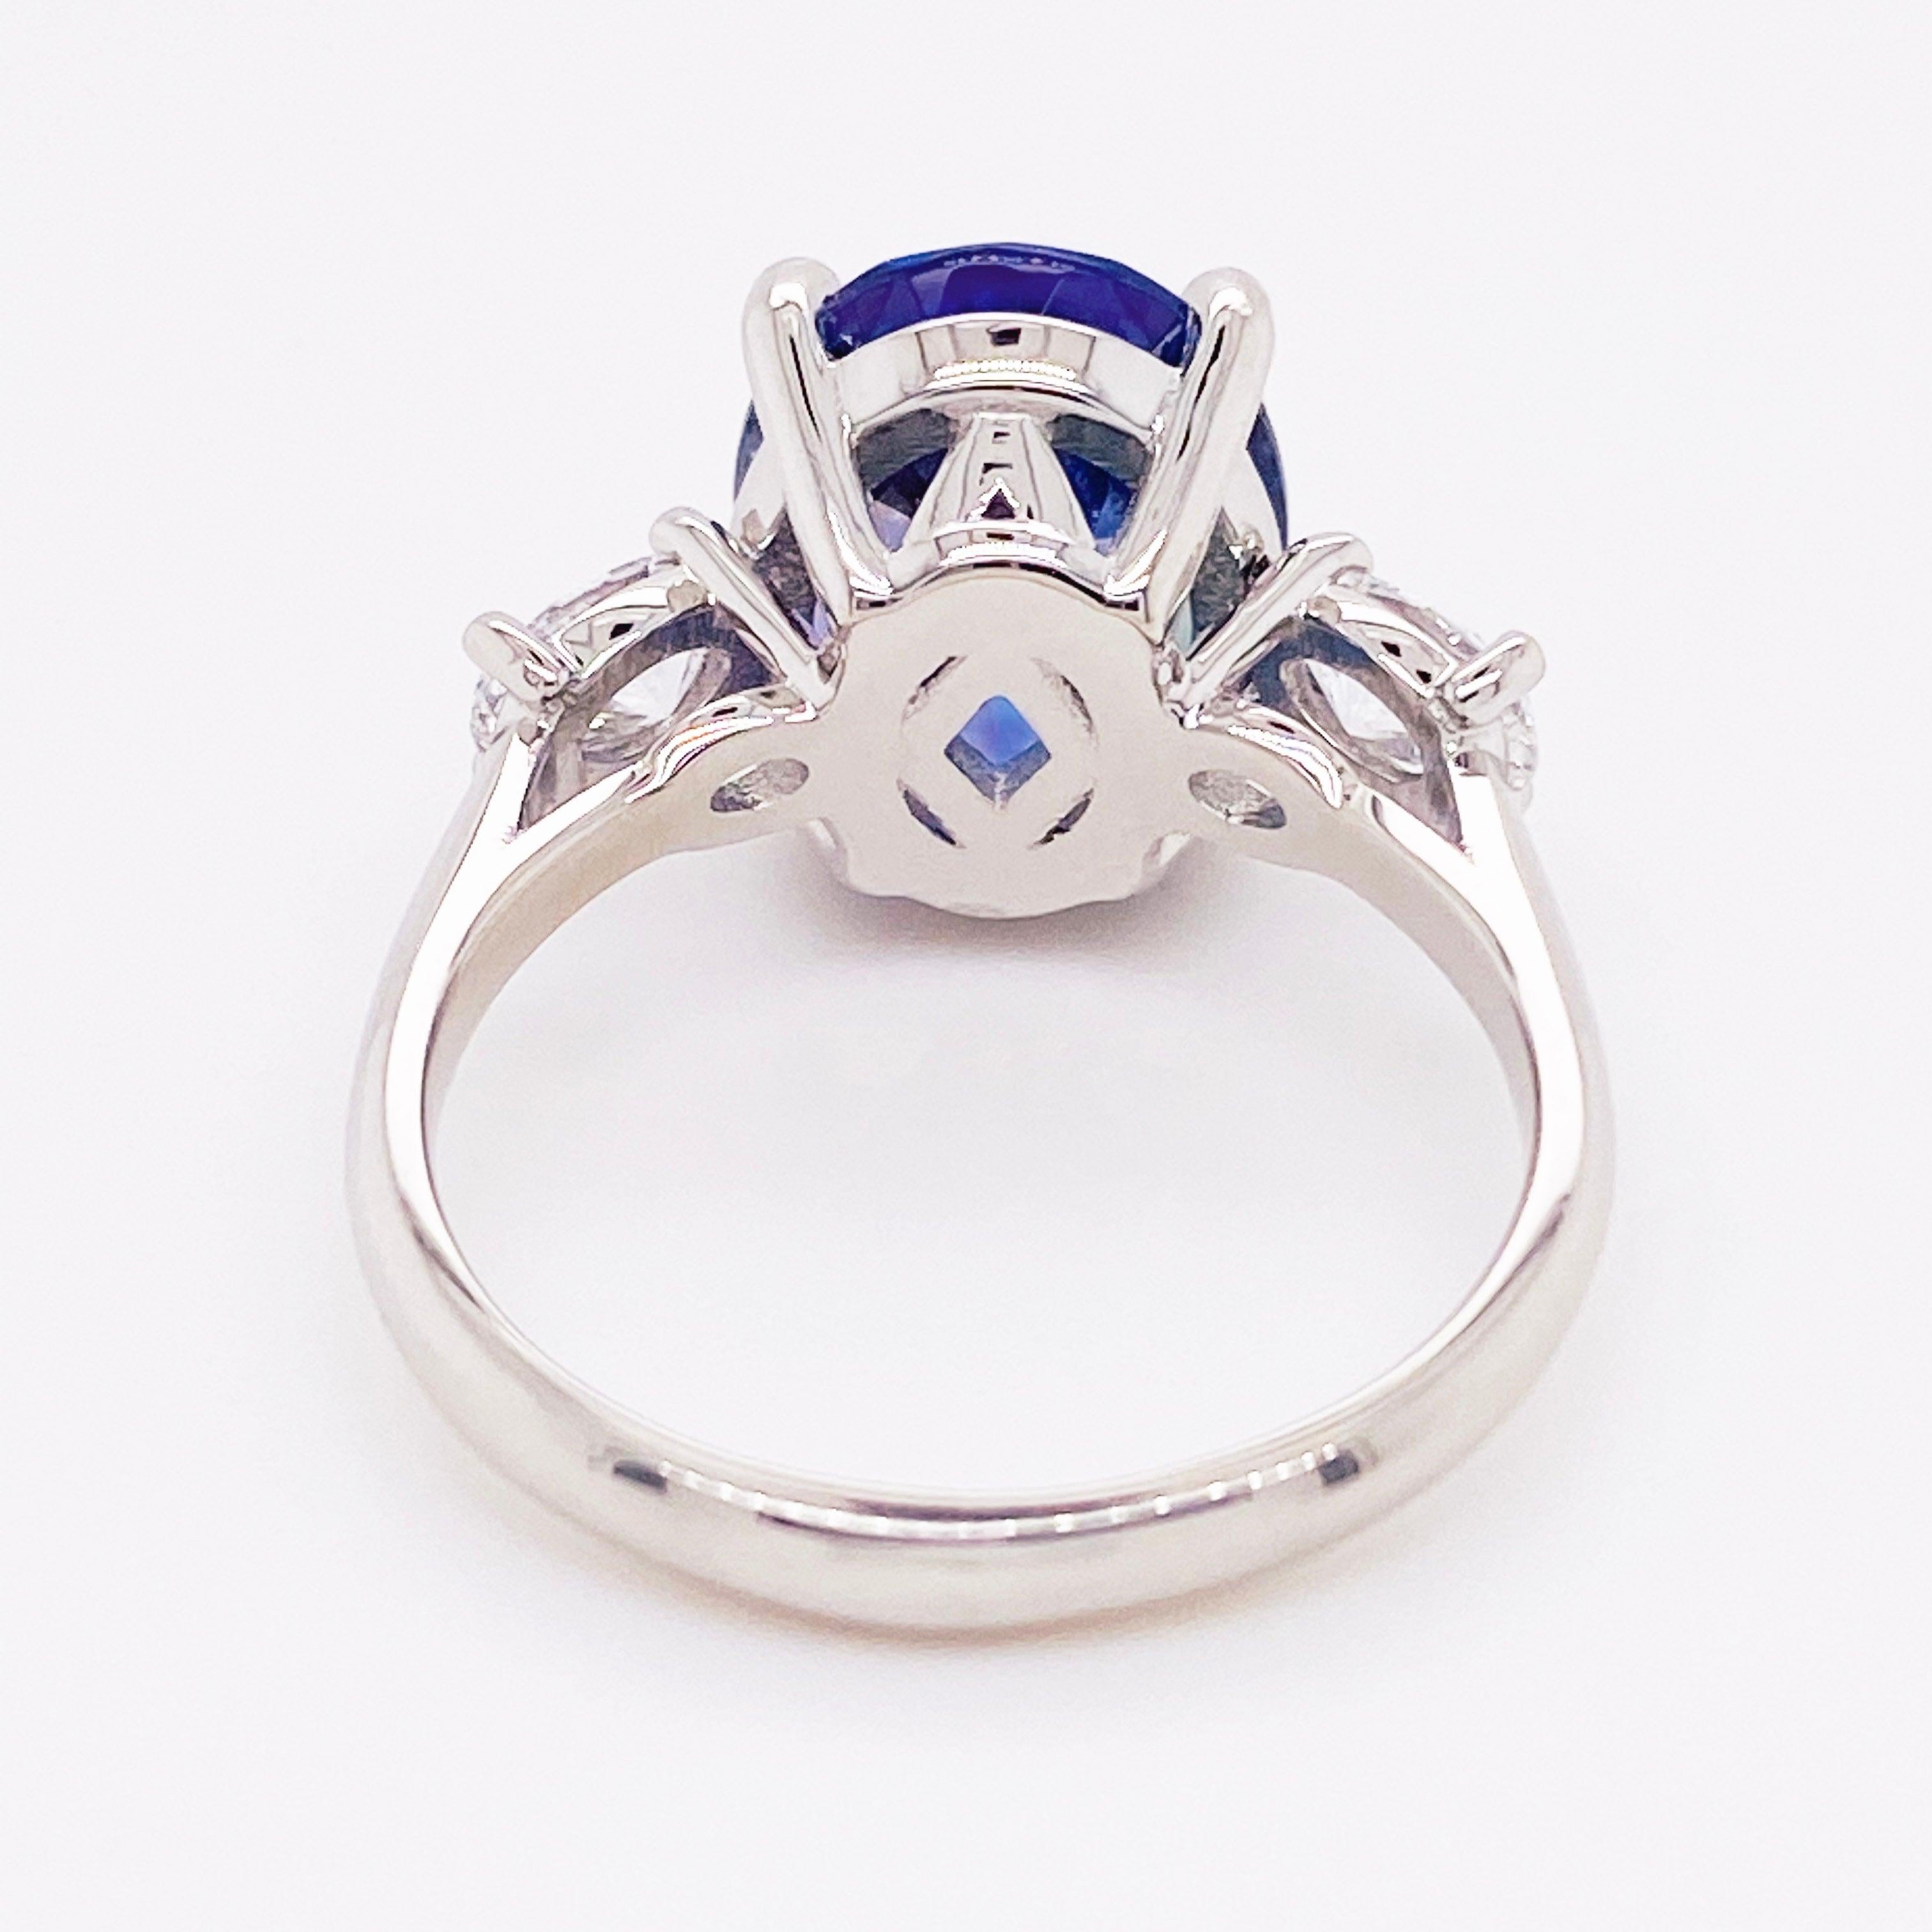 For Sale:  Tanzanite Diamond Ring, 4.77 Carat Tanz, 14 Karat Gold Three-Stone Ring 5